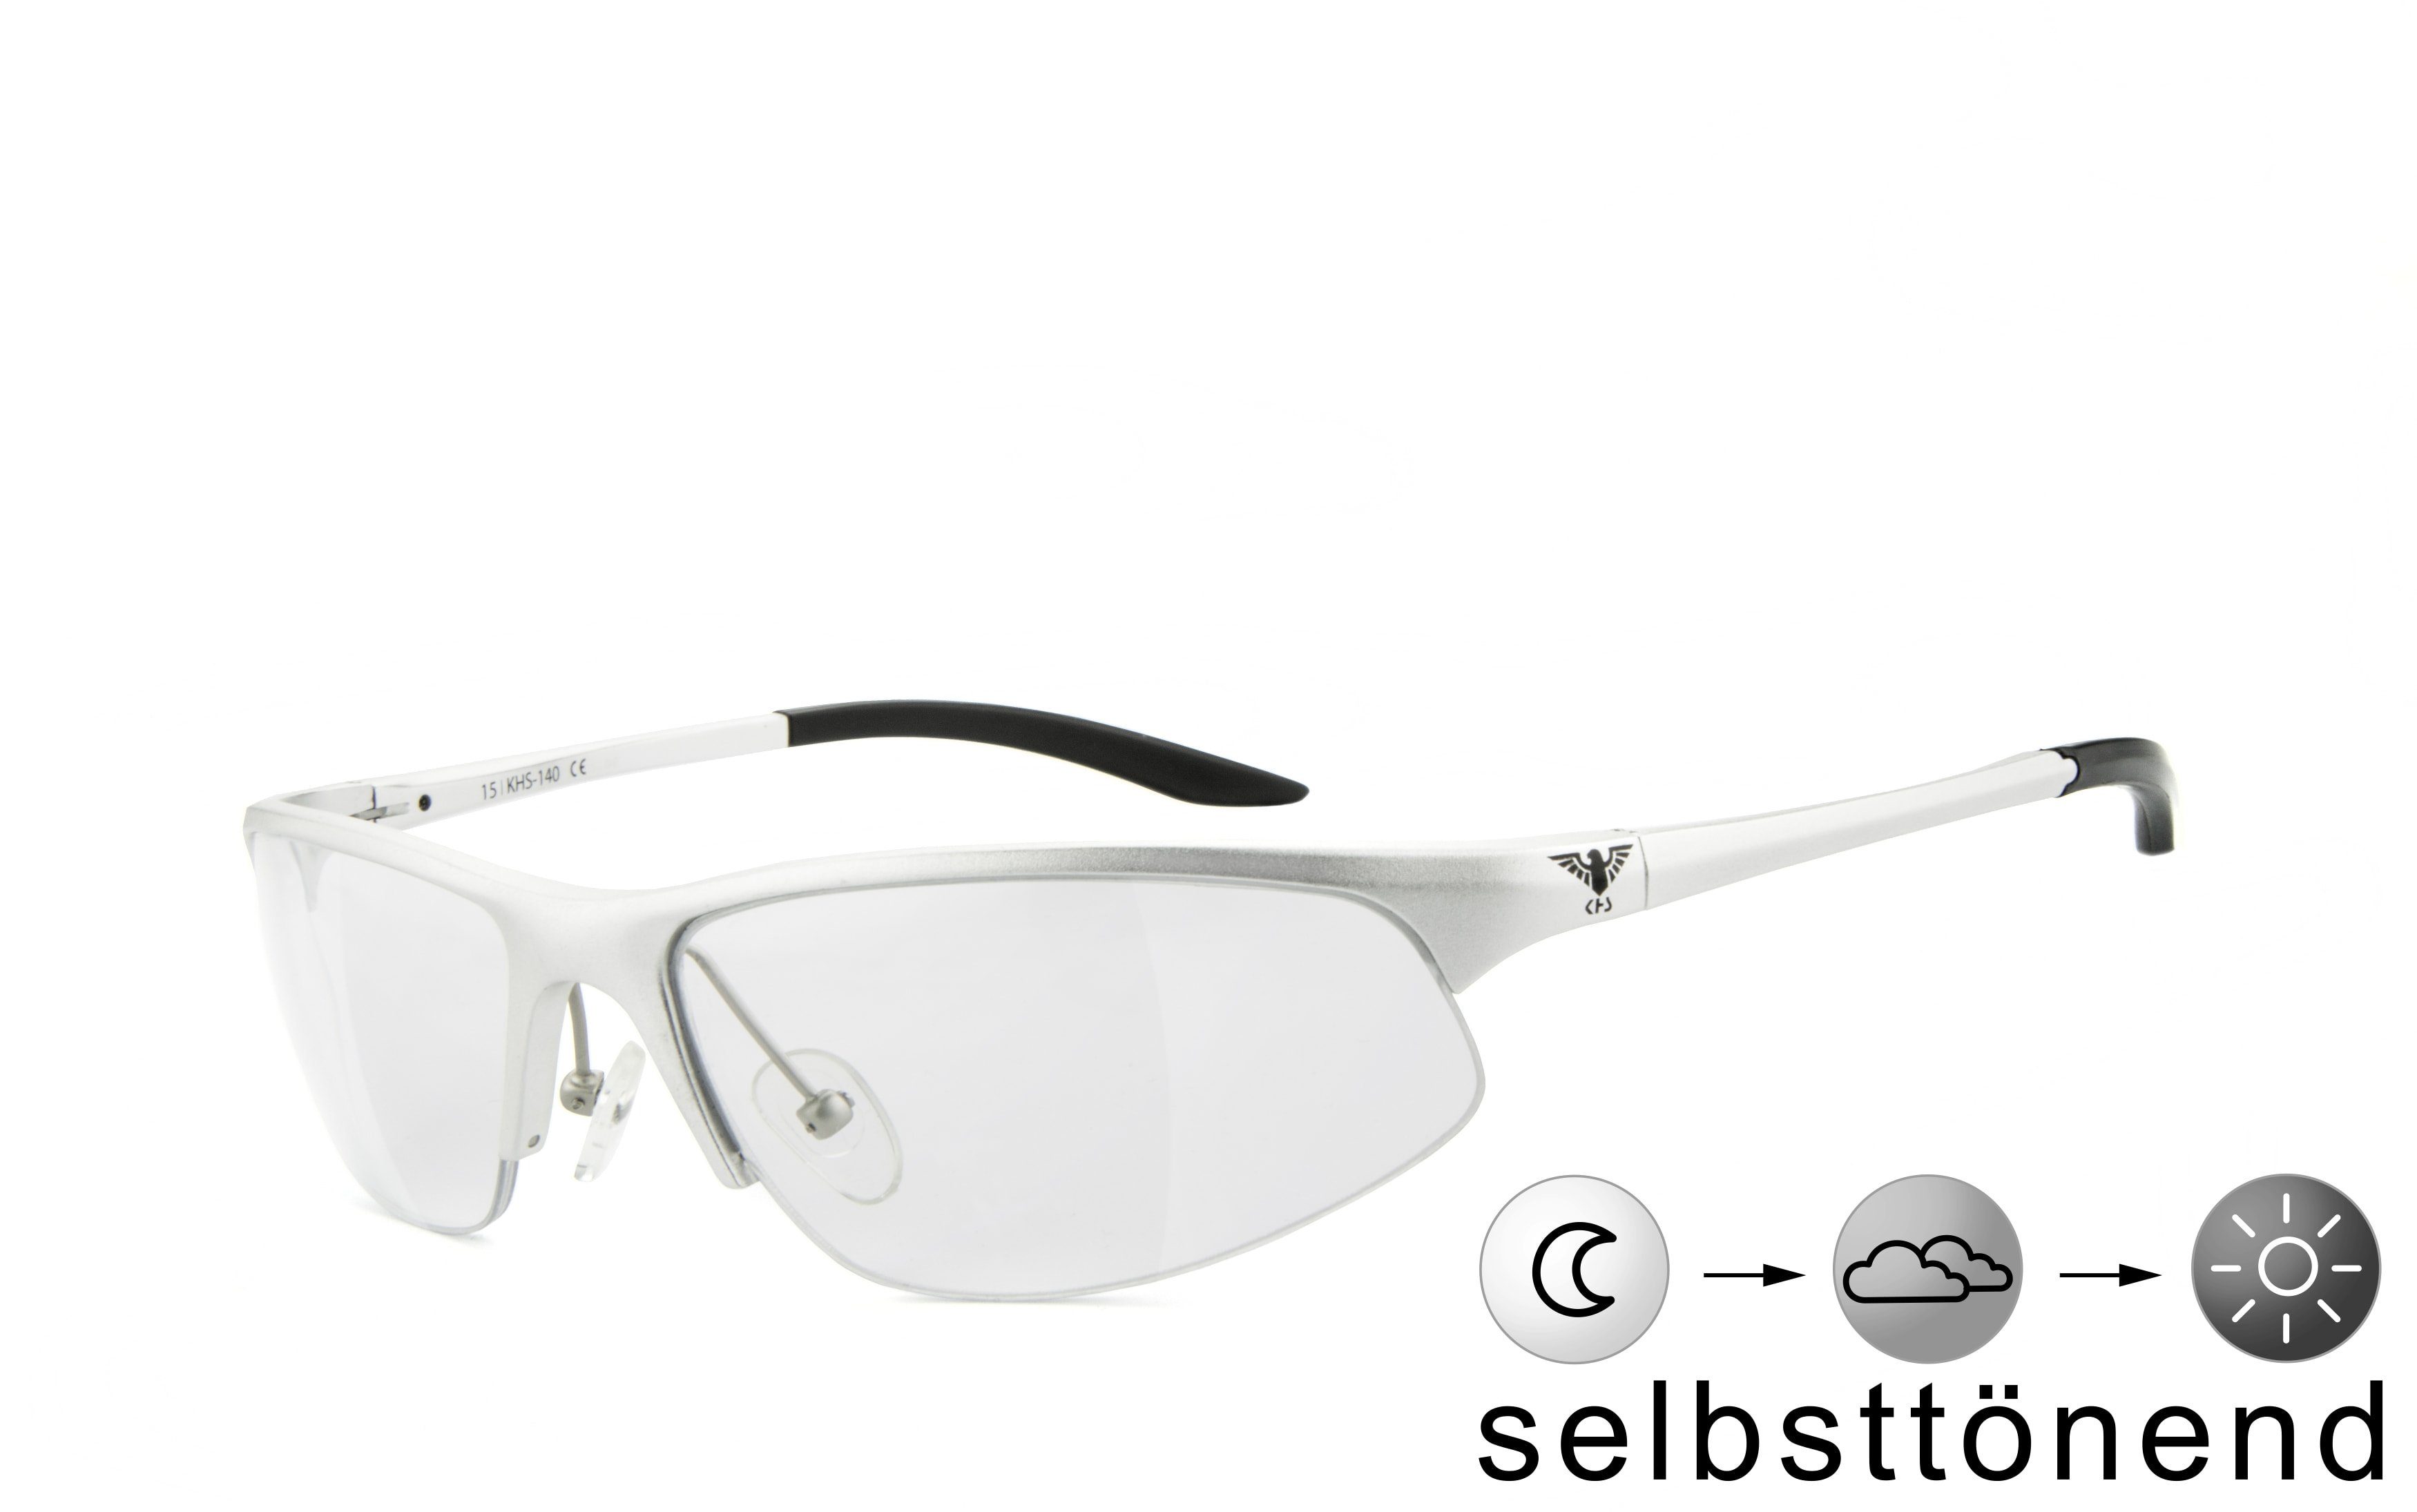 KHS Sonnenbrille KHS-140s - selbsttönend schnell selbsttönende Gläser